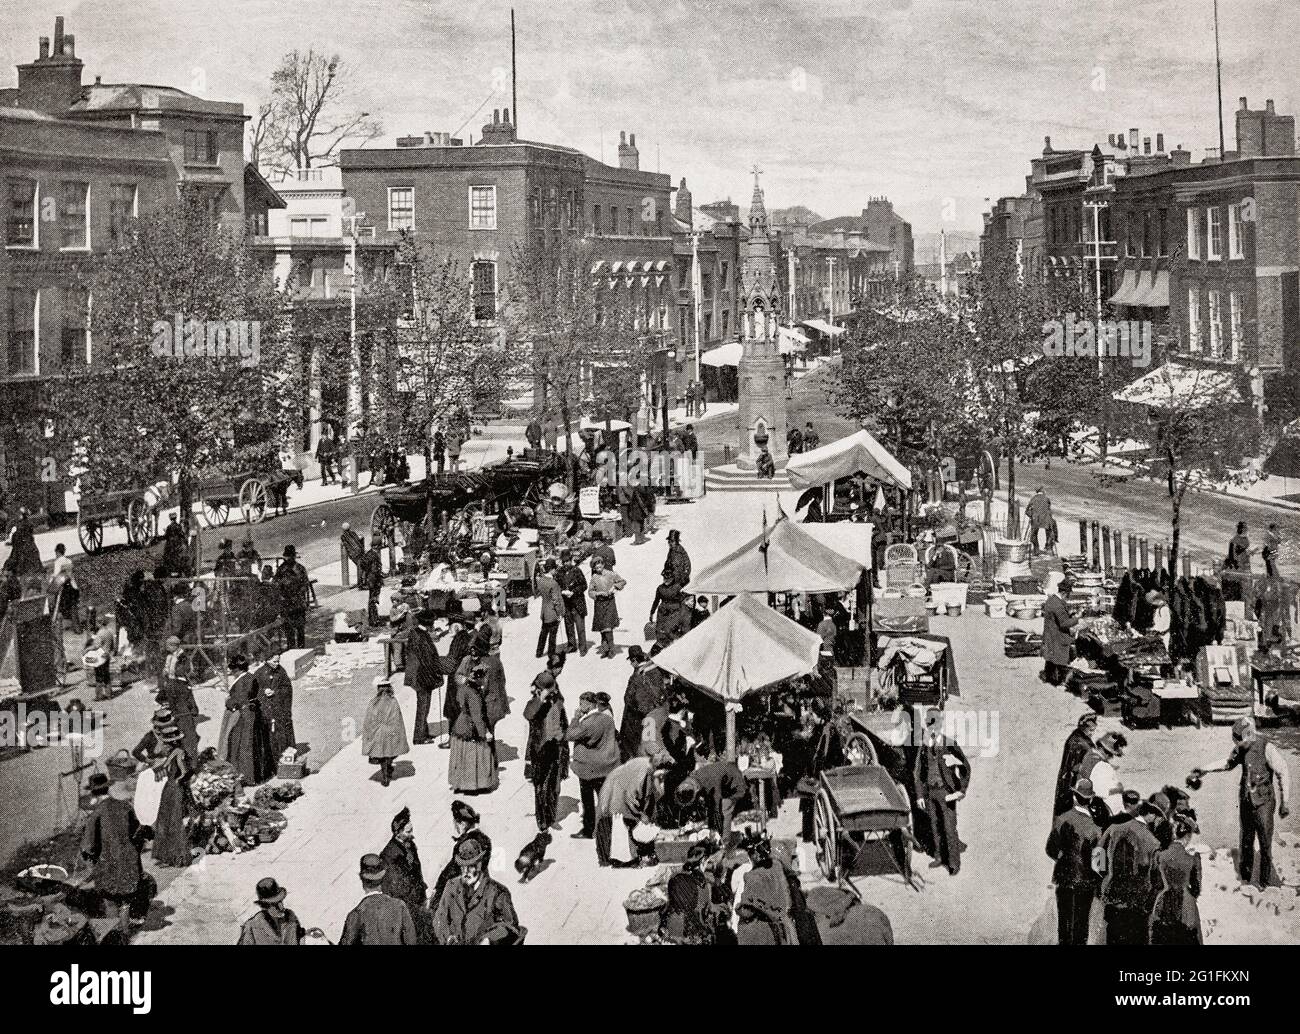 Ein Blick aus dem späten 19. Jahrhundert auf die Käufer und Verkäufer auf dem Street Market in der Parade oder dem Market Place in Taunton, Somerset, England. Stockfoto